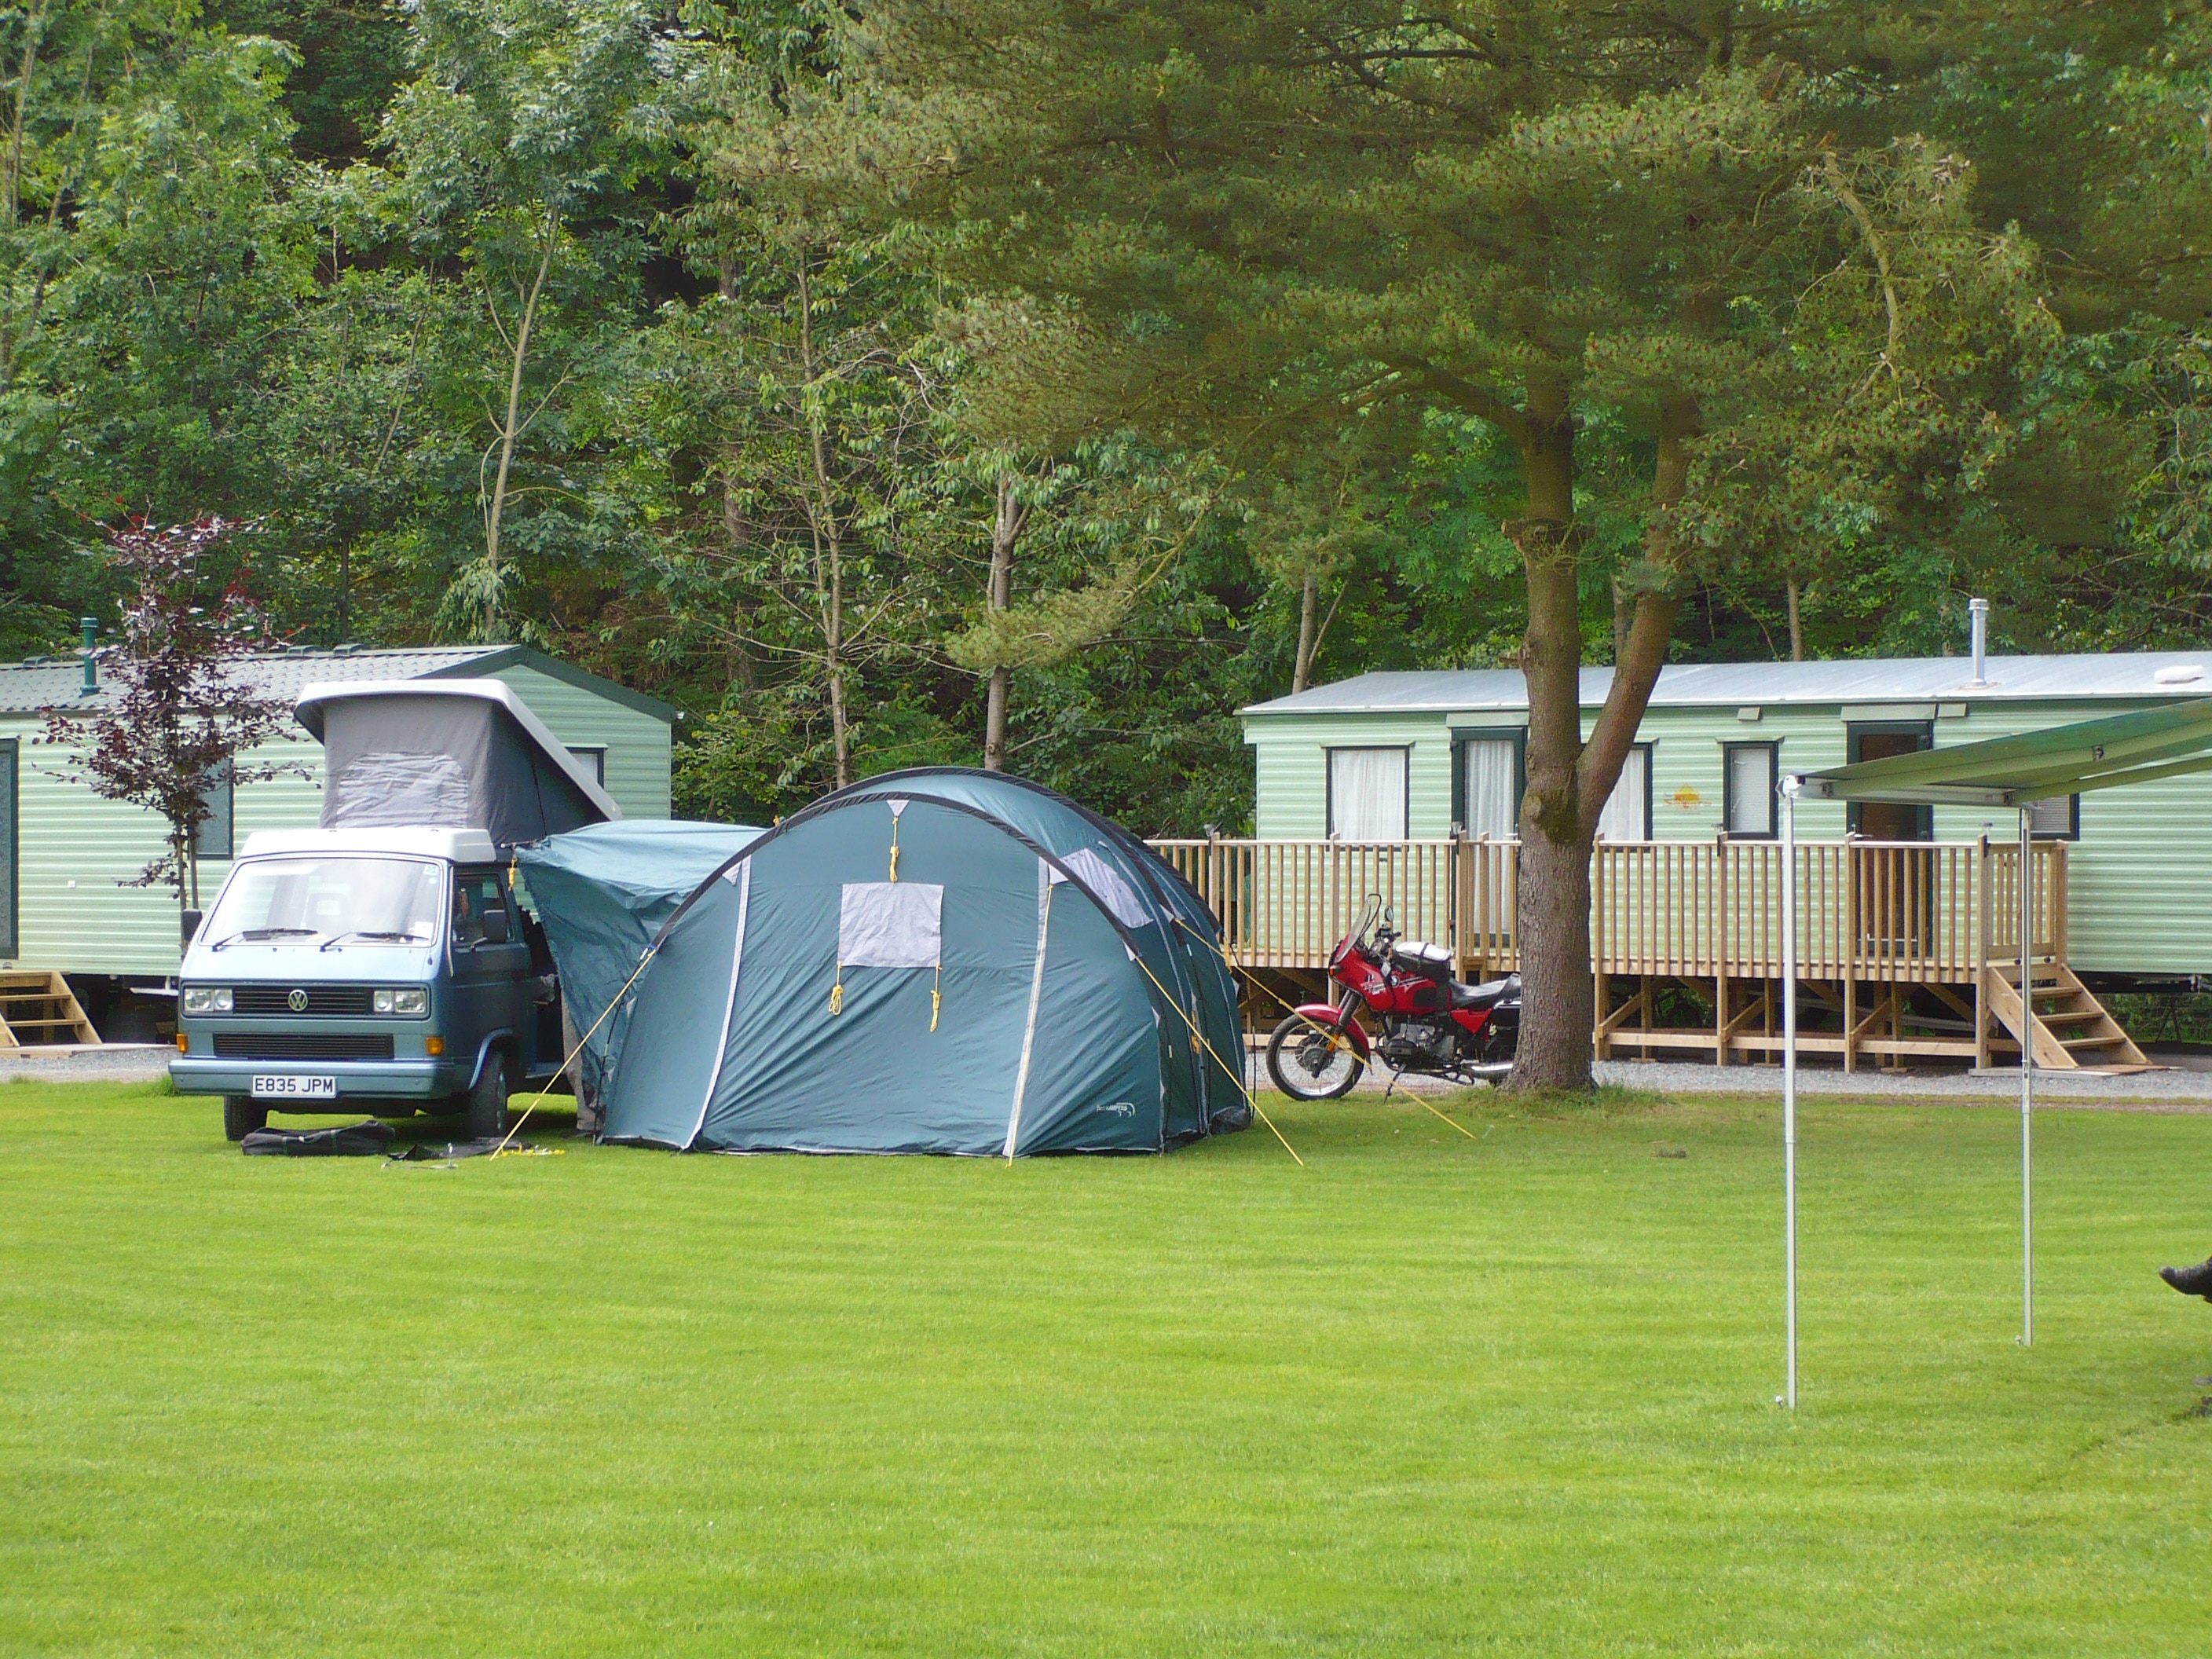 Disserth Caravan & Camping Park